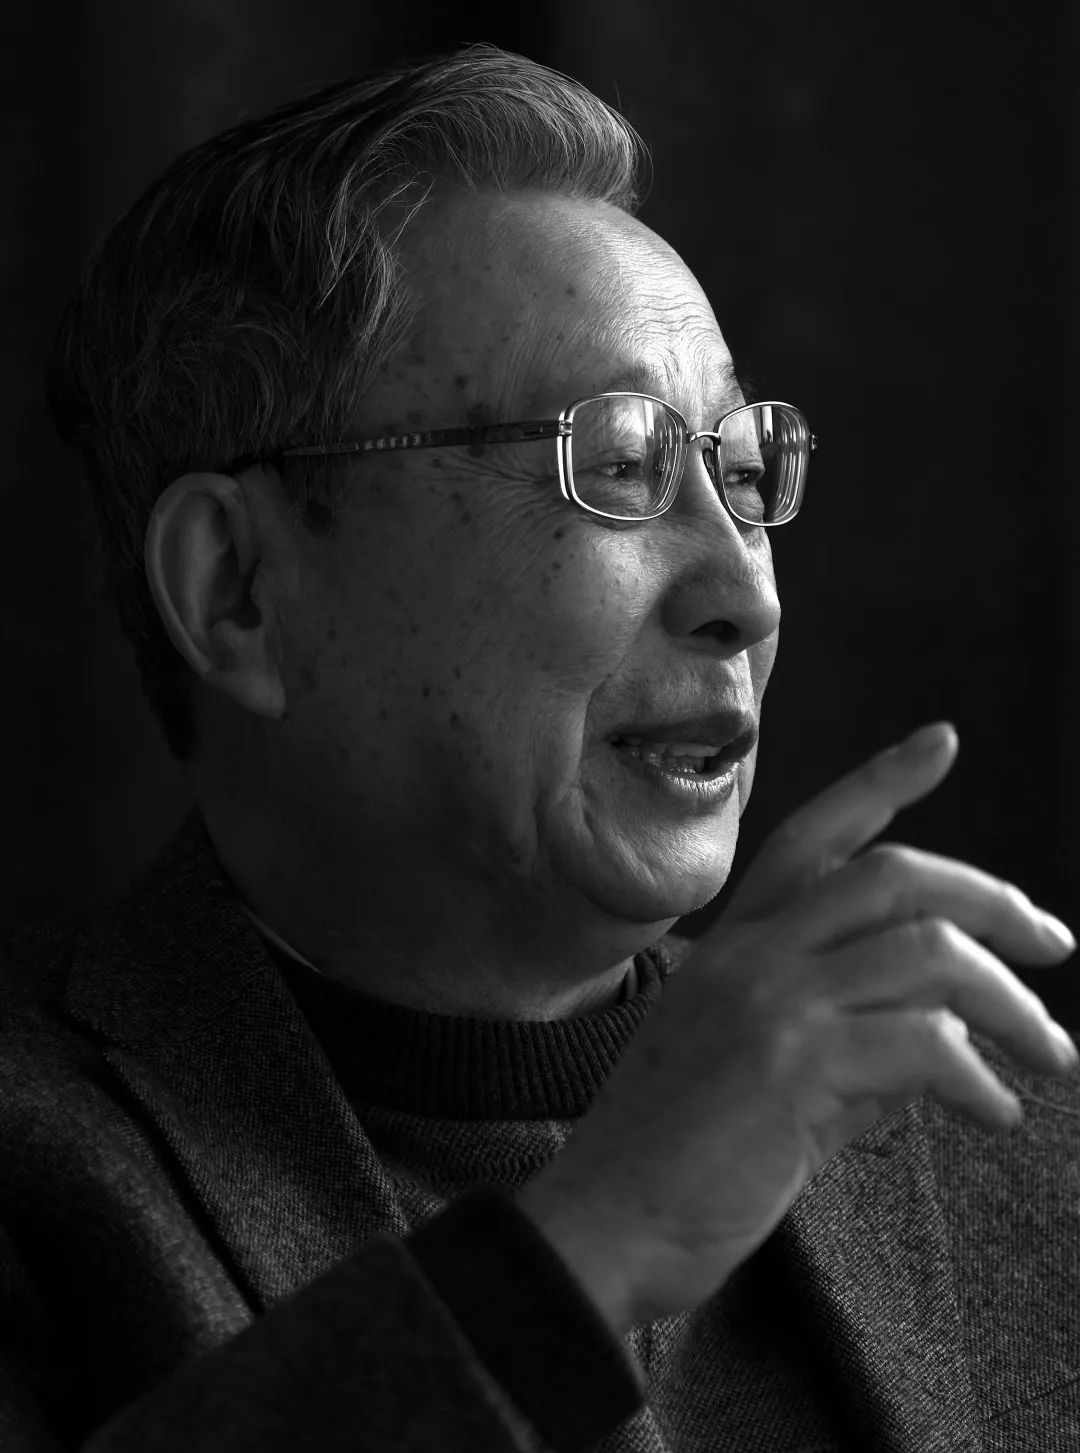 沉痛悼念并深切缅怀上海大学计算机学院首任院长李三立院士